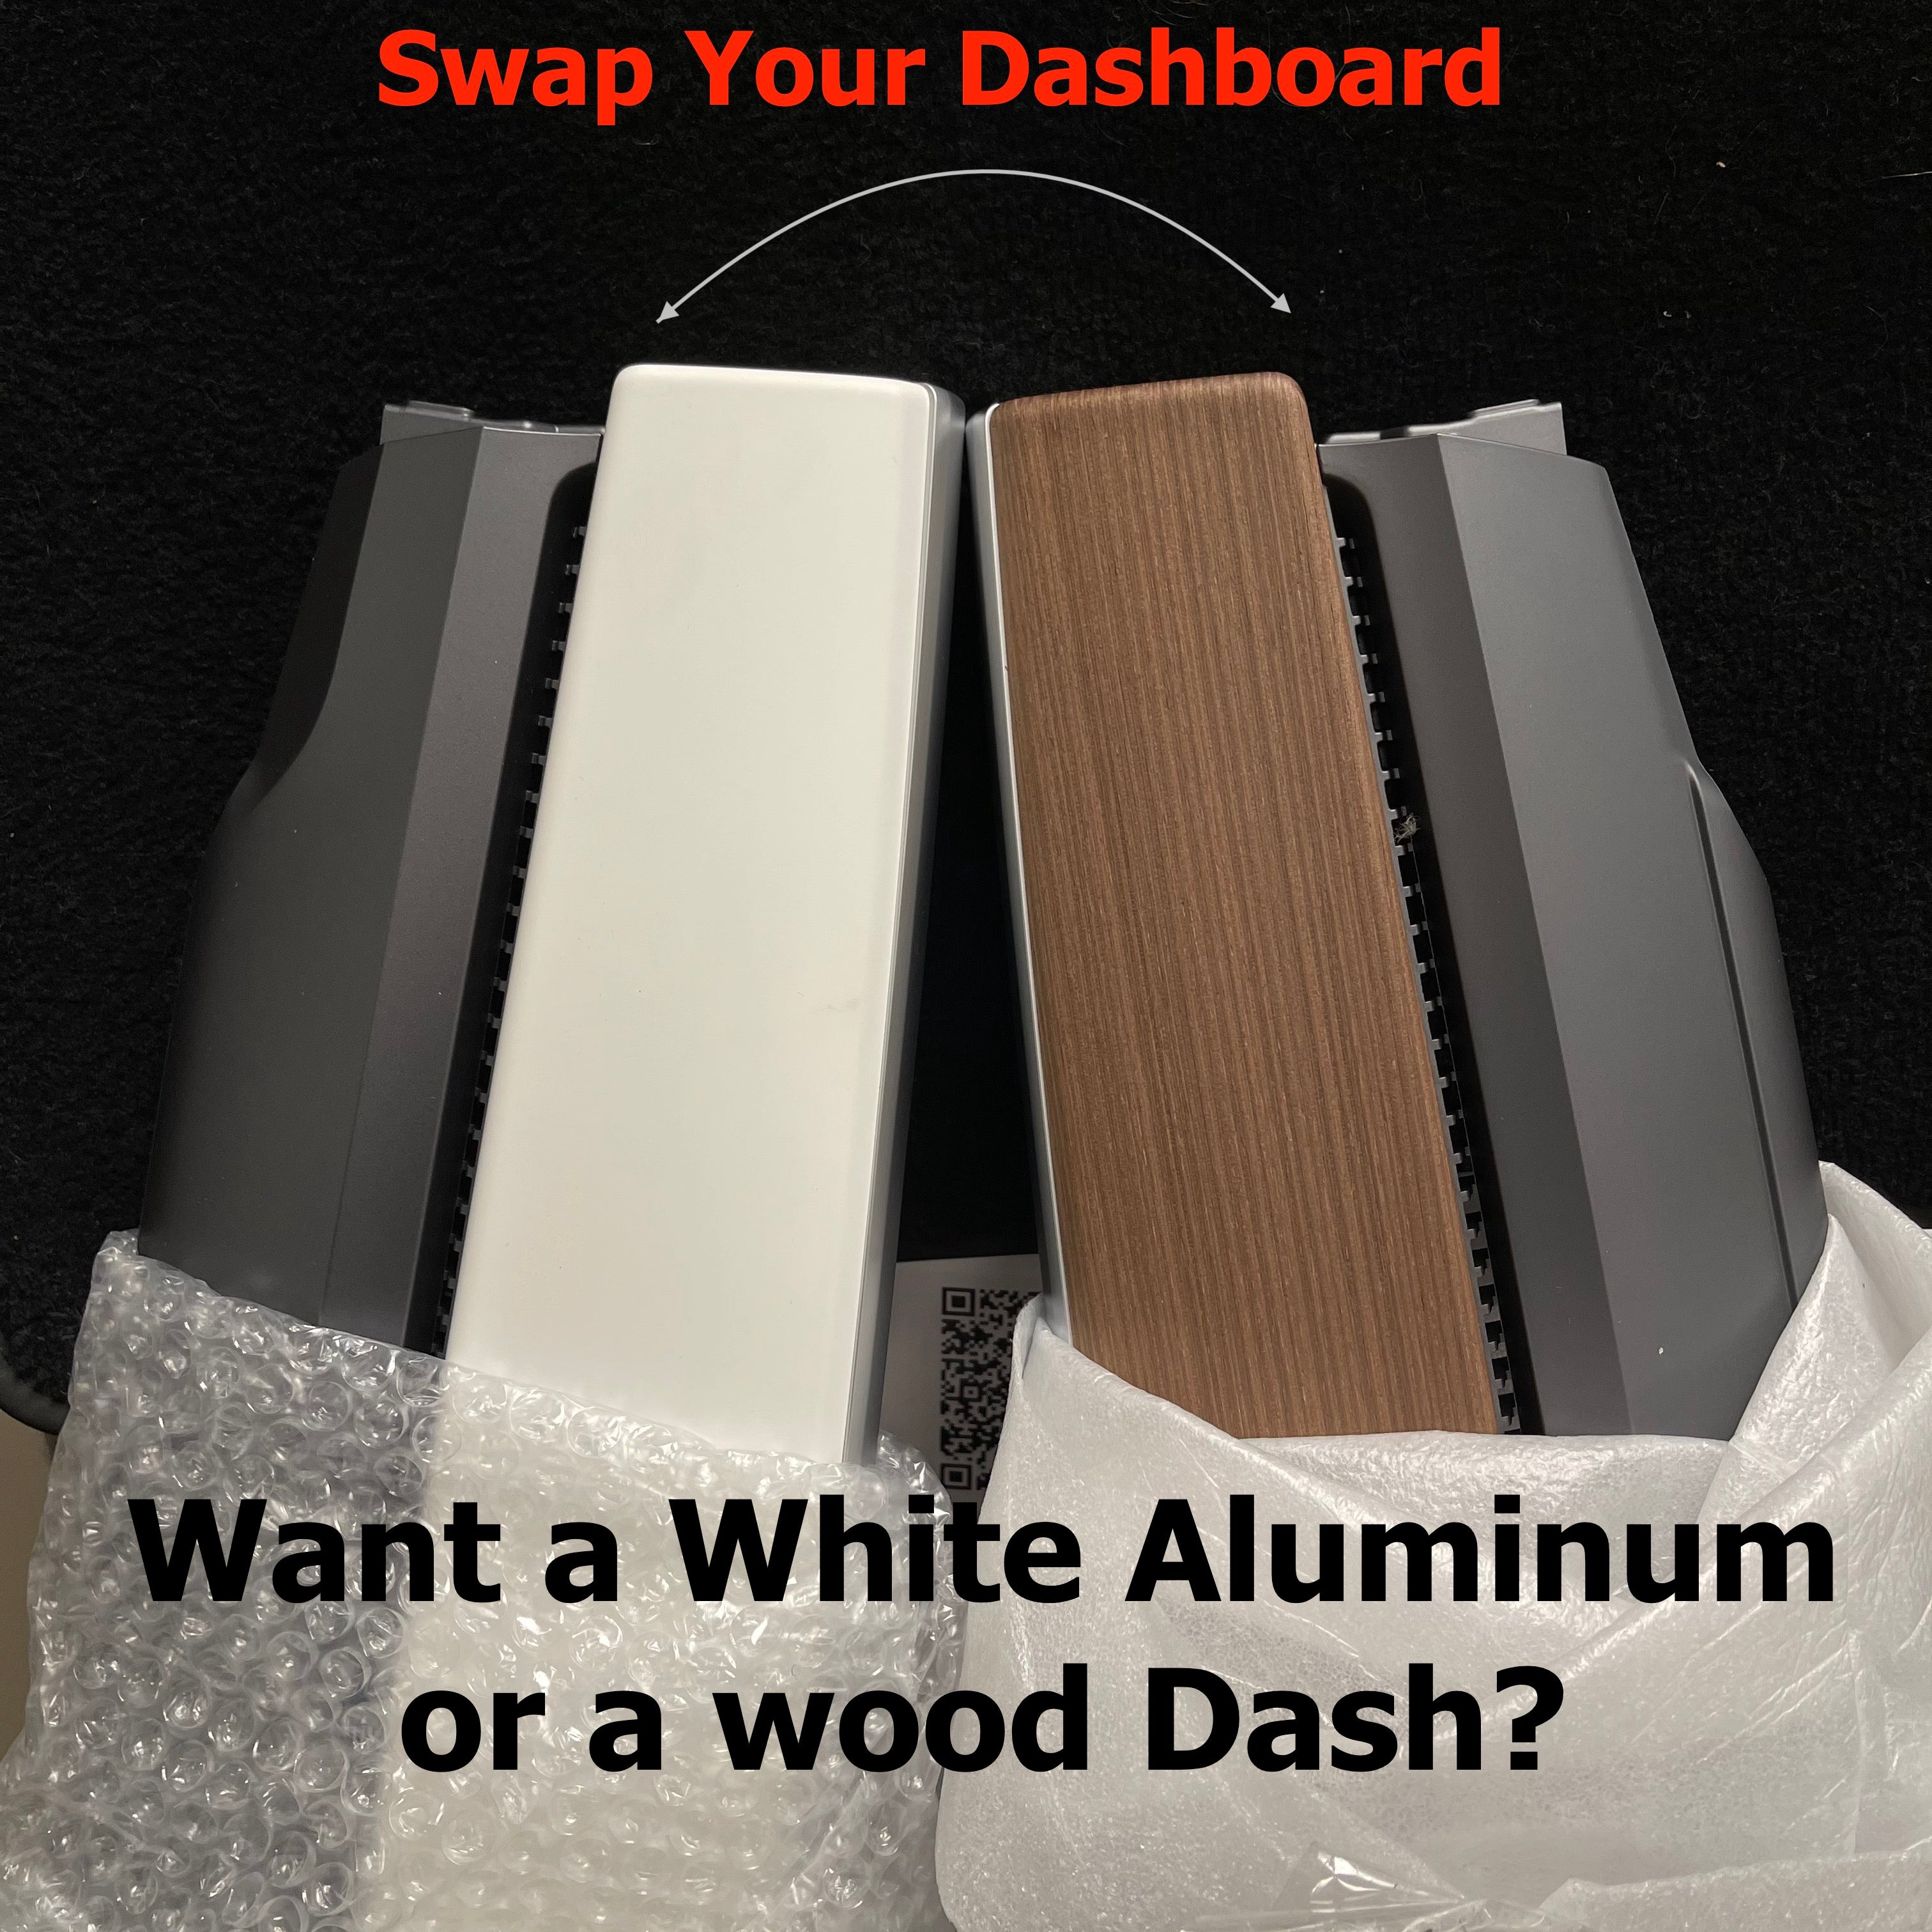 Model 3 & Y Dashboard & Door Panel Swapping Program - Swap Wood to Whi